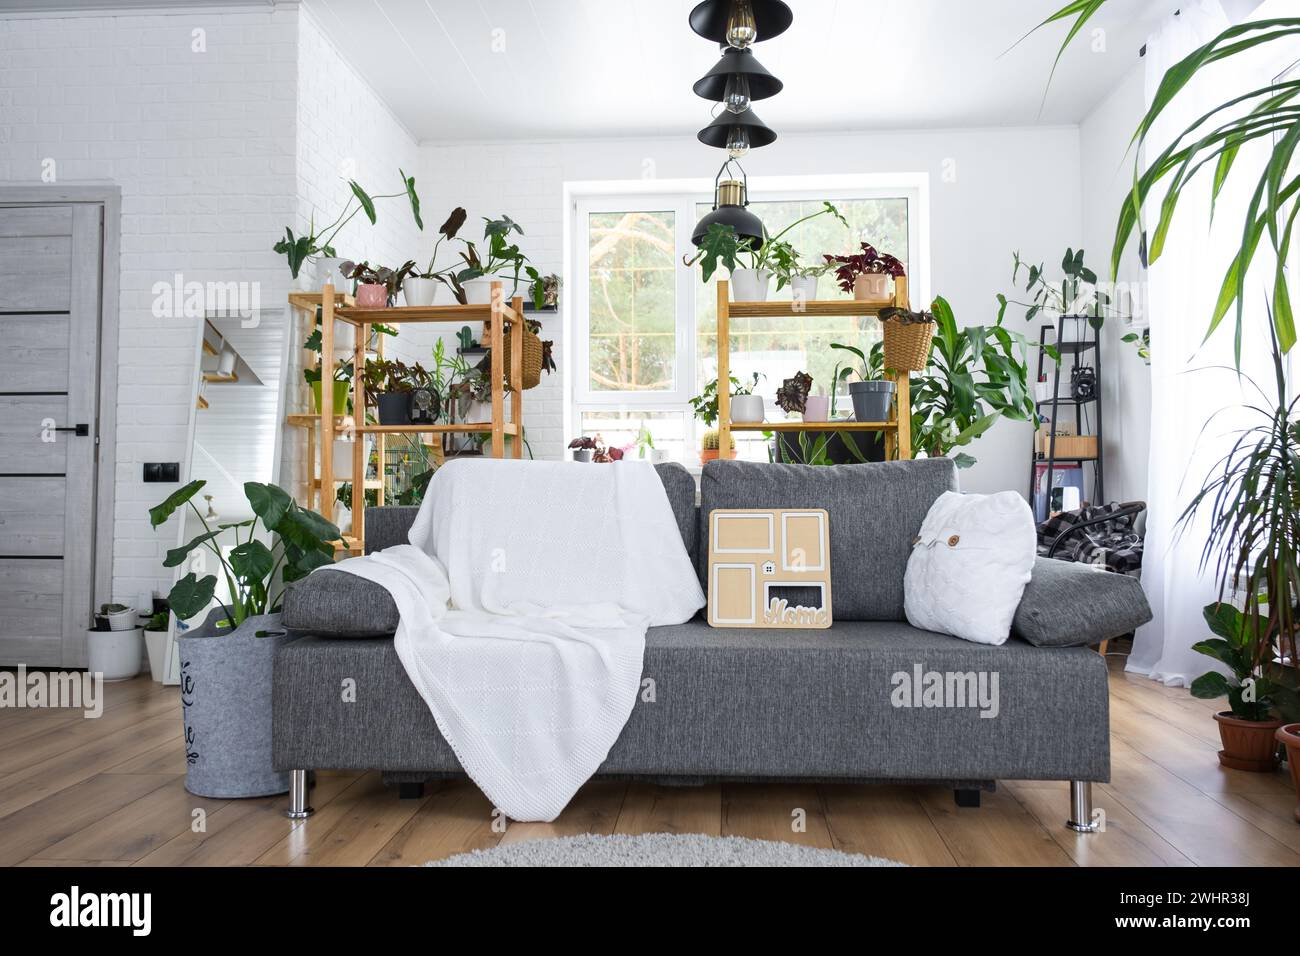 Chiave per la casa con portachiavi e struttura in miniatura della casa su divano grigio con interni bianchi con piante in vaso. Progettazione, progettazione Foto Stock